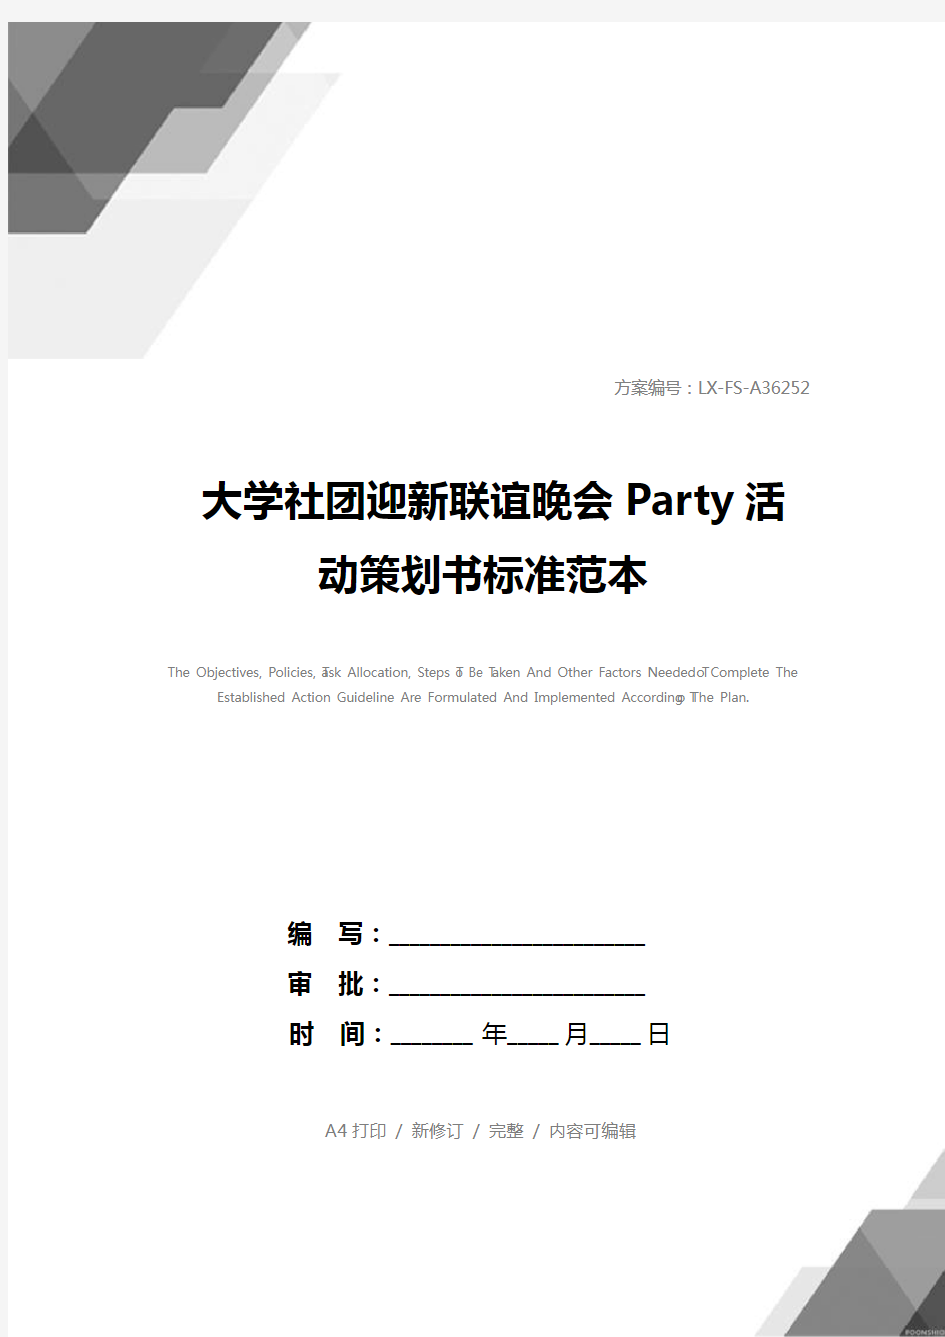 大学社团迎新联谊晚会Party活动策划书标准范本